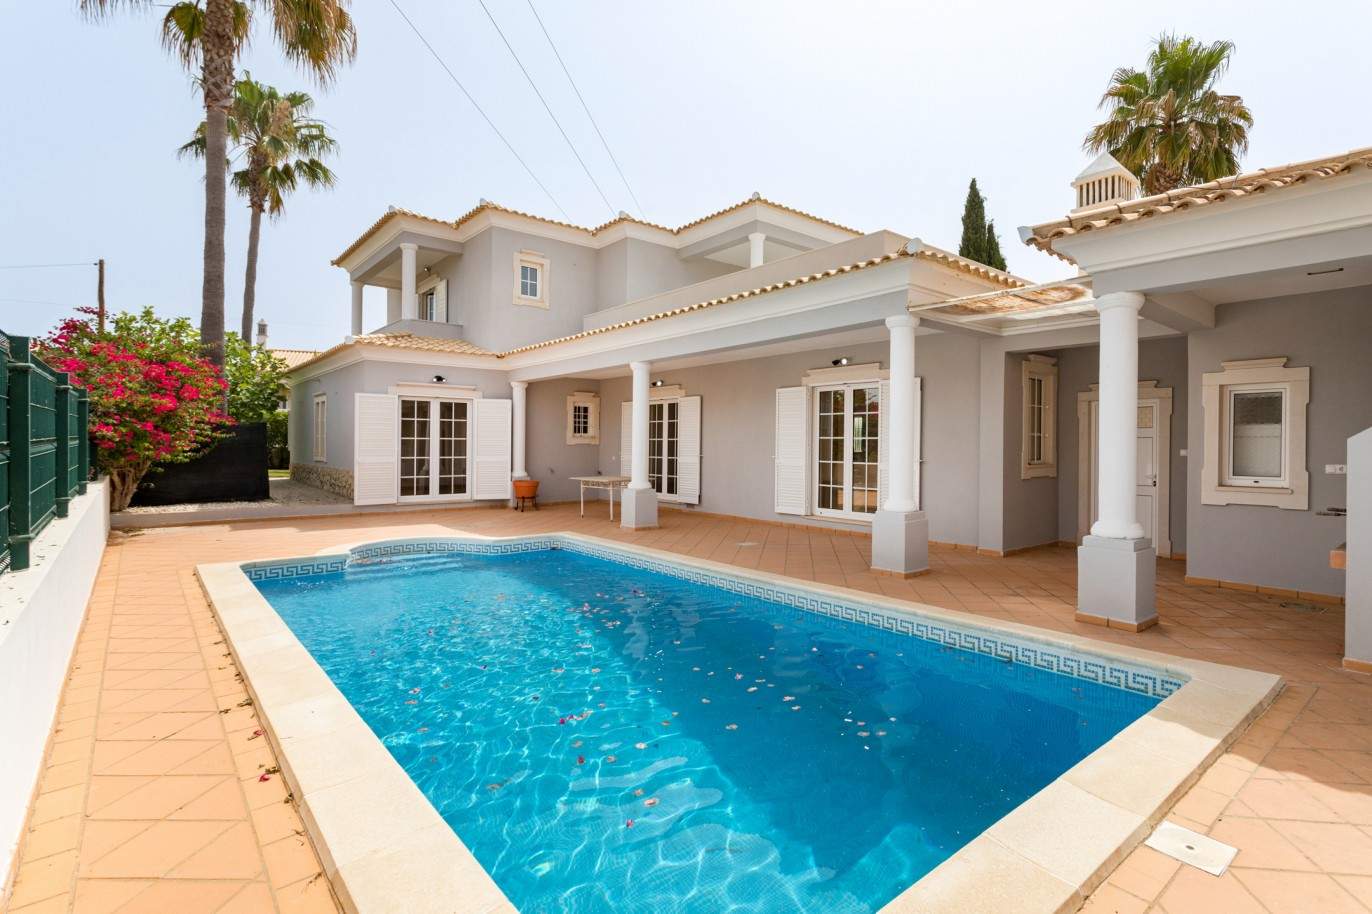 Villa de 4 dormitorios con piscina en venta en Quarteira, Algarve_201731